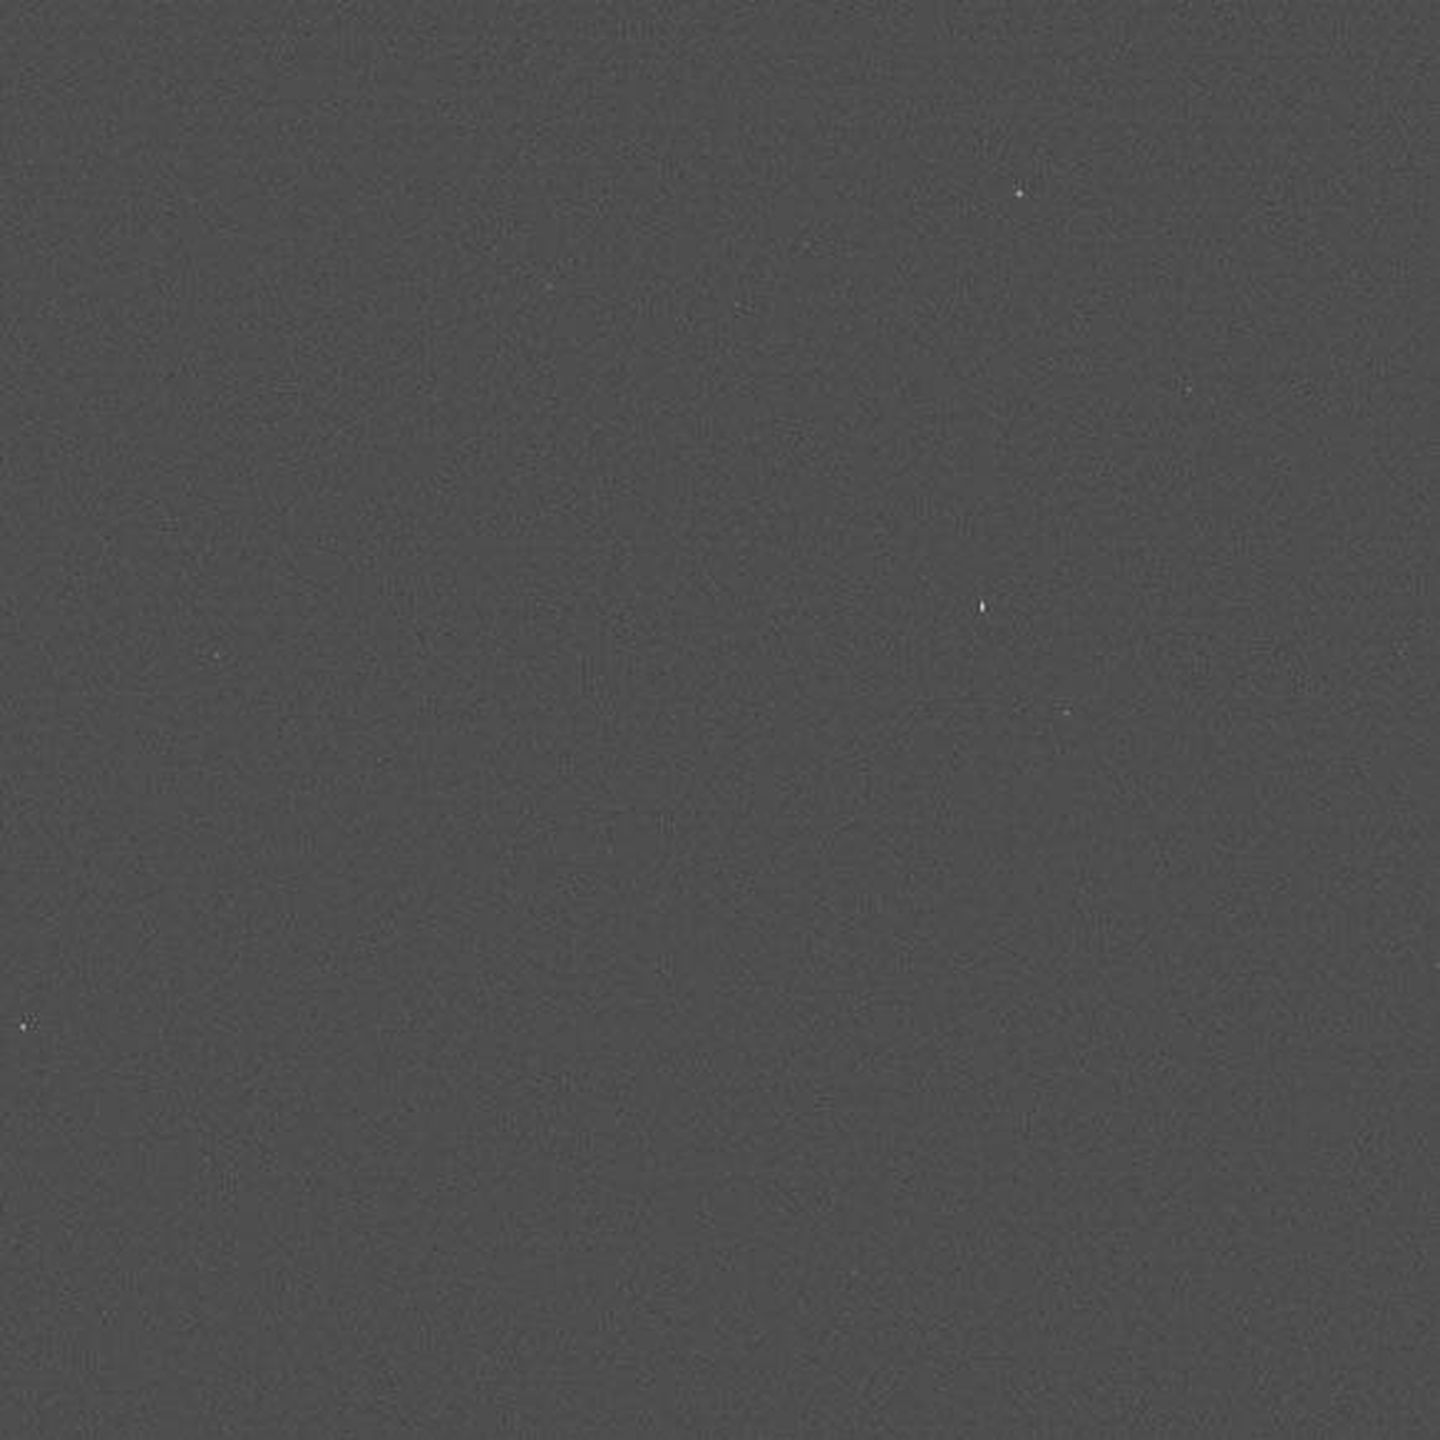 Primera foto de DART (NASA)